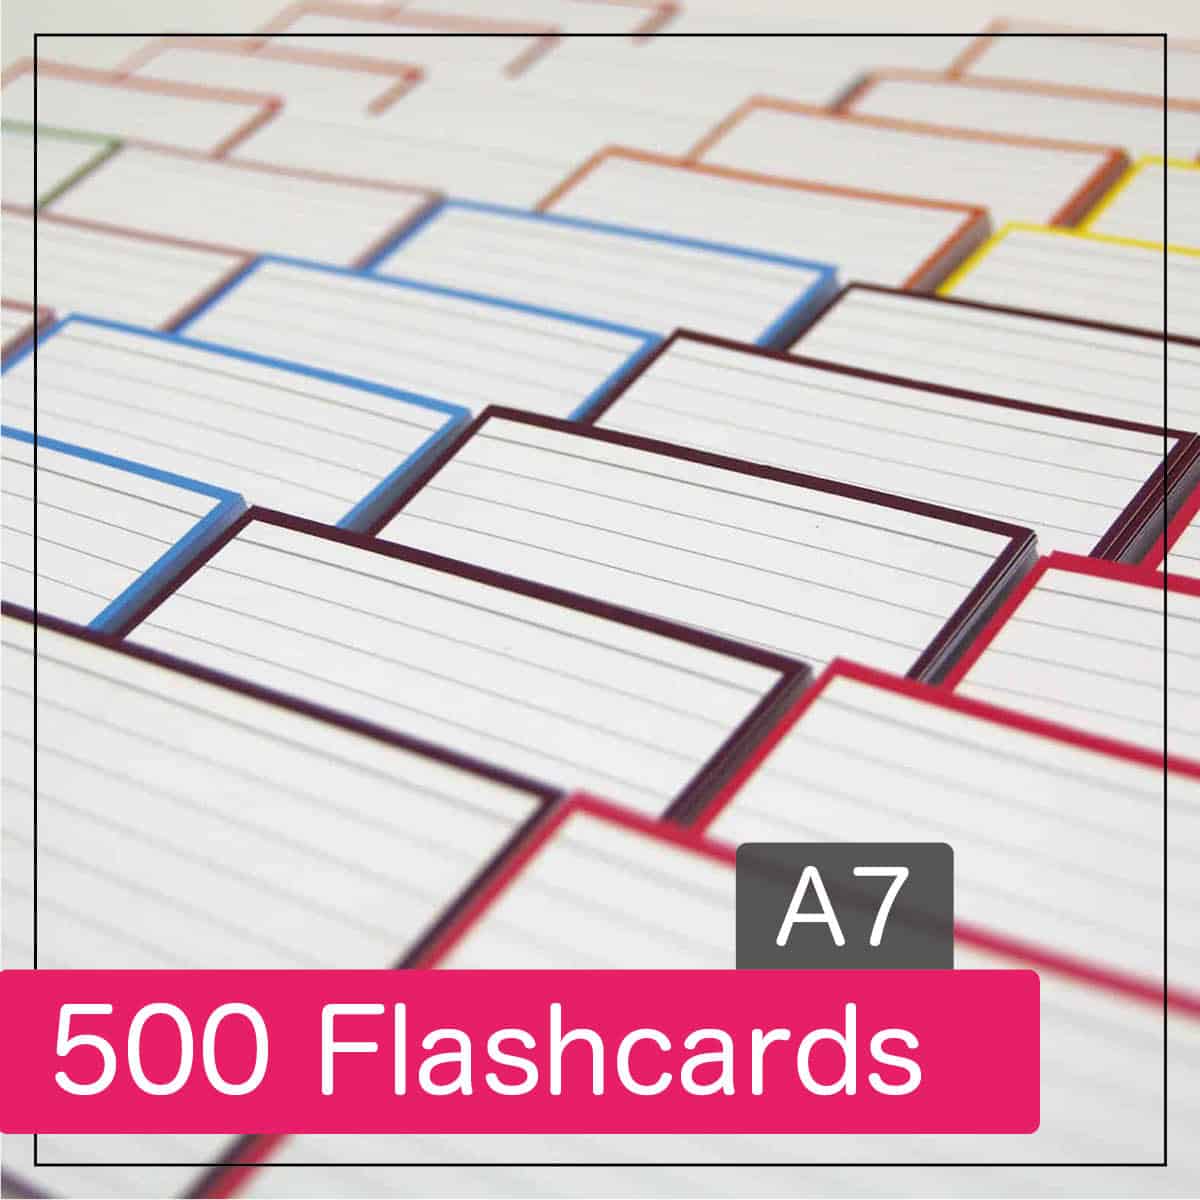 Vooraf bodem Tulpen 500 flashcards - A7 formaat (10 pakjes) - Leitner Flashcards